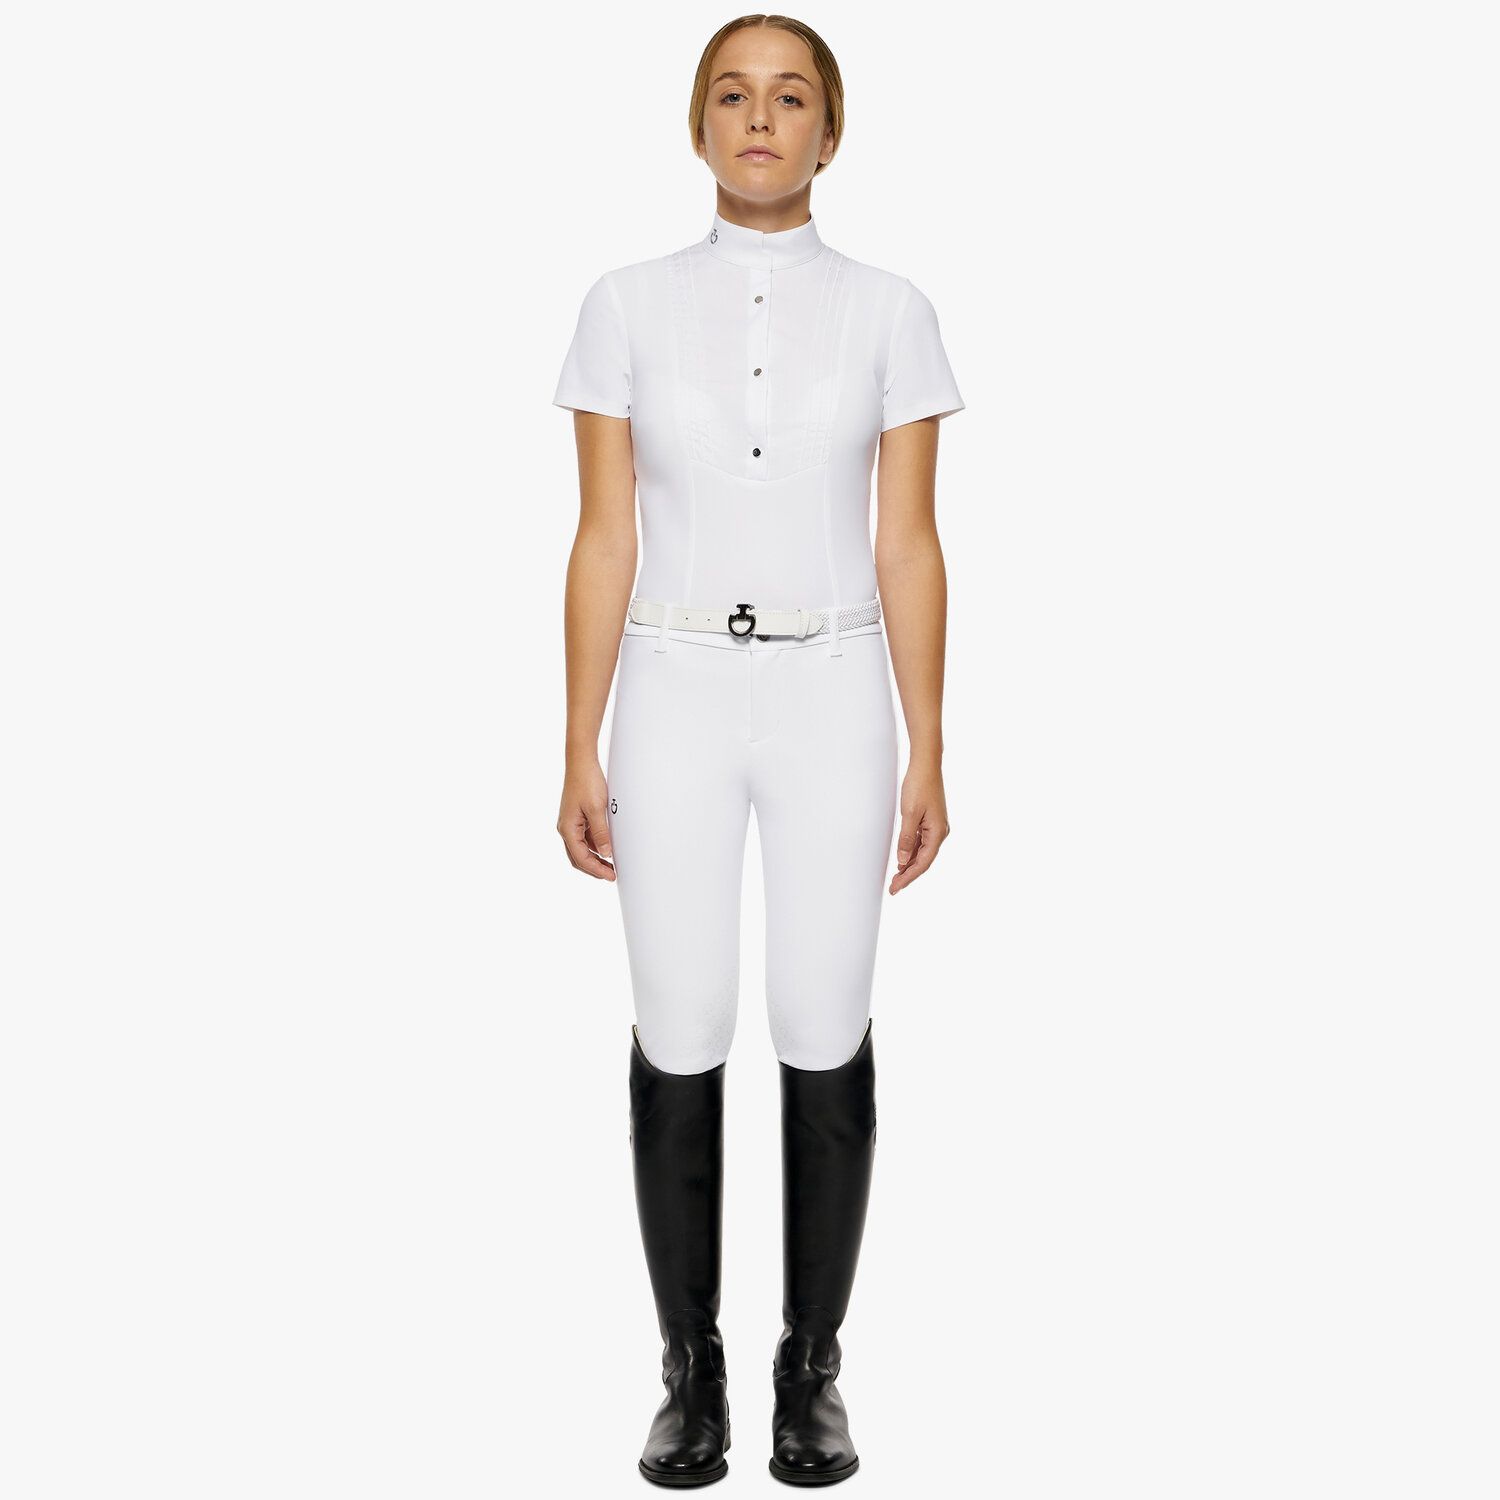 Cavalleria Toscana Girl's short-sleeved shirt WHITE-2